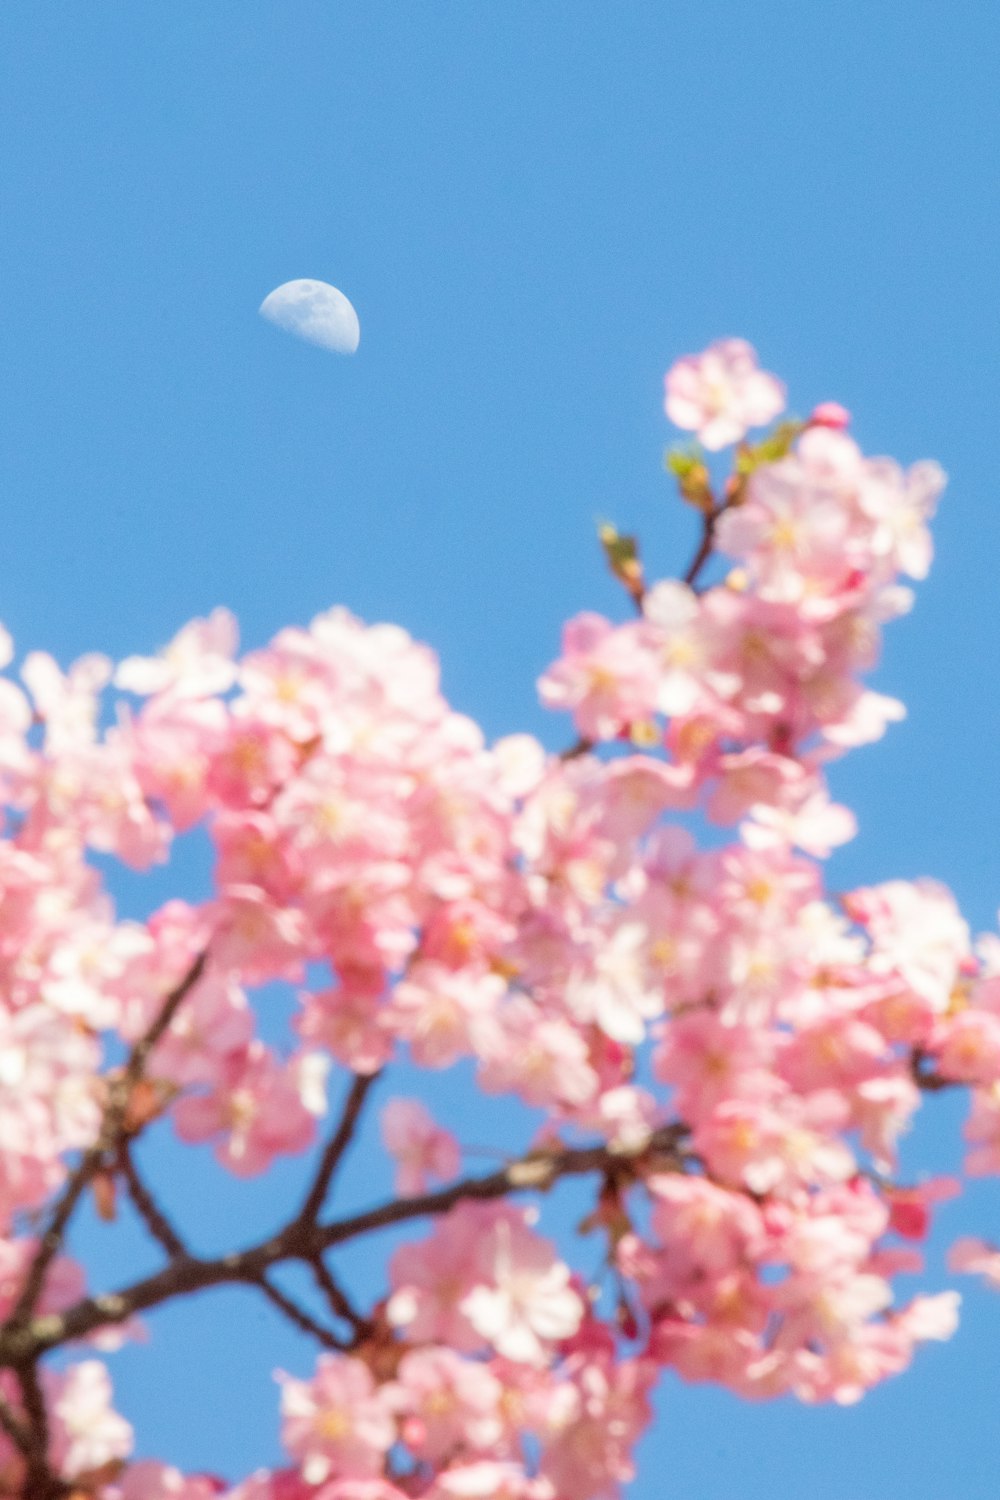 La lune est vue à travers les branches d’un cerisier en fleurs